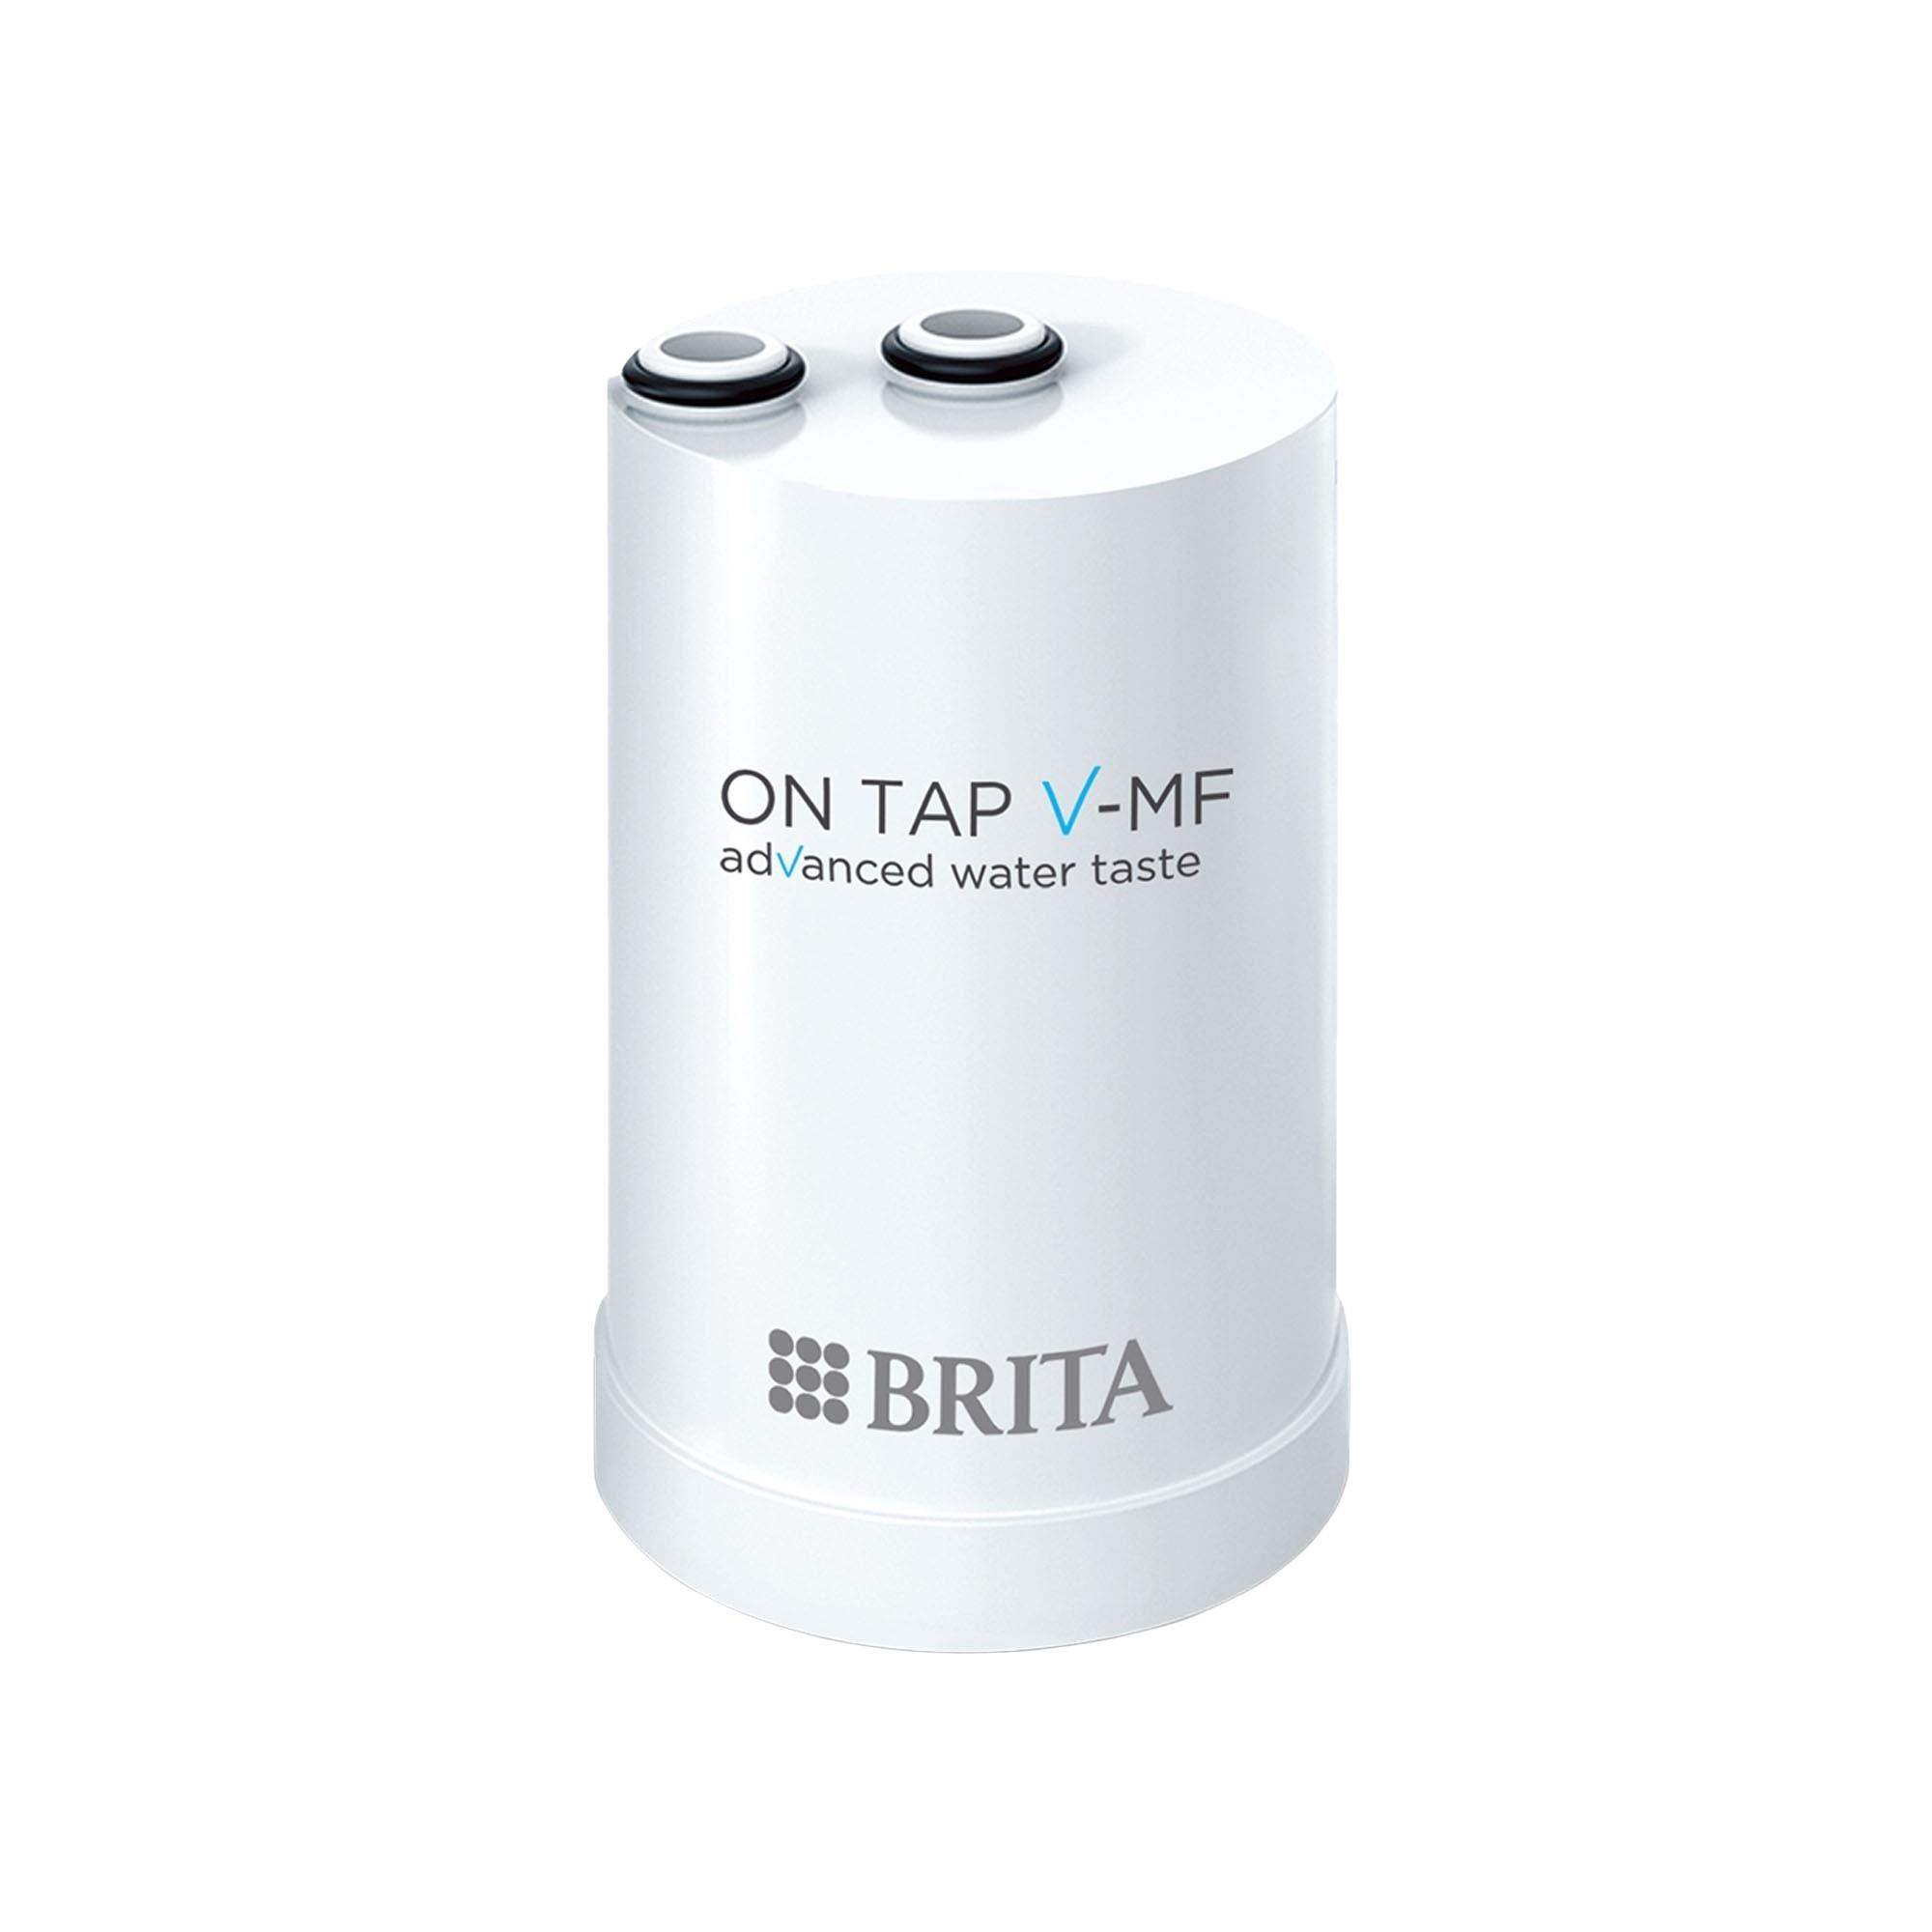 Brita OnTap náhradní filtrační vložka pro V-MF,  až 600 litrů filtrované vody0 